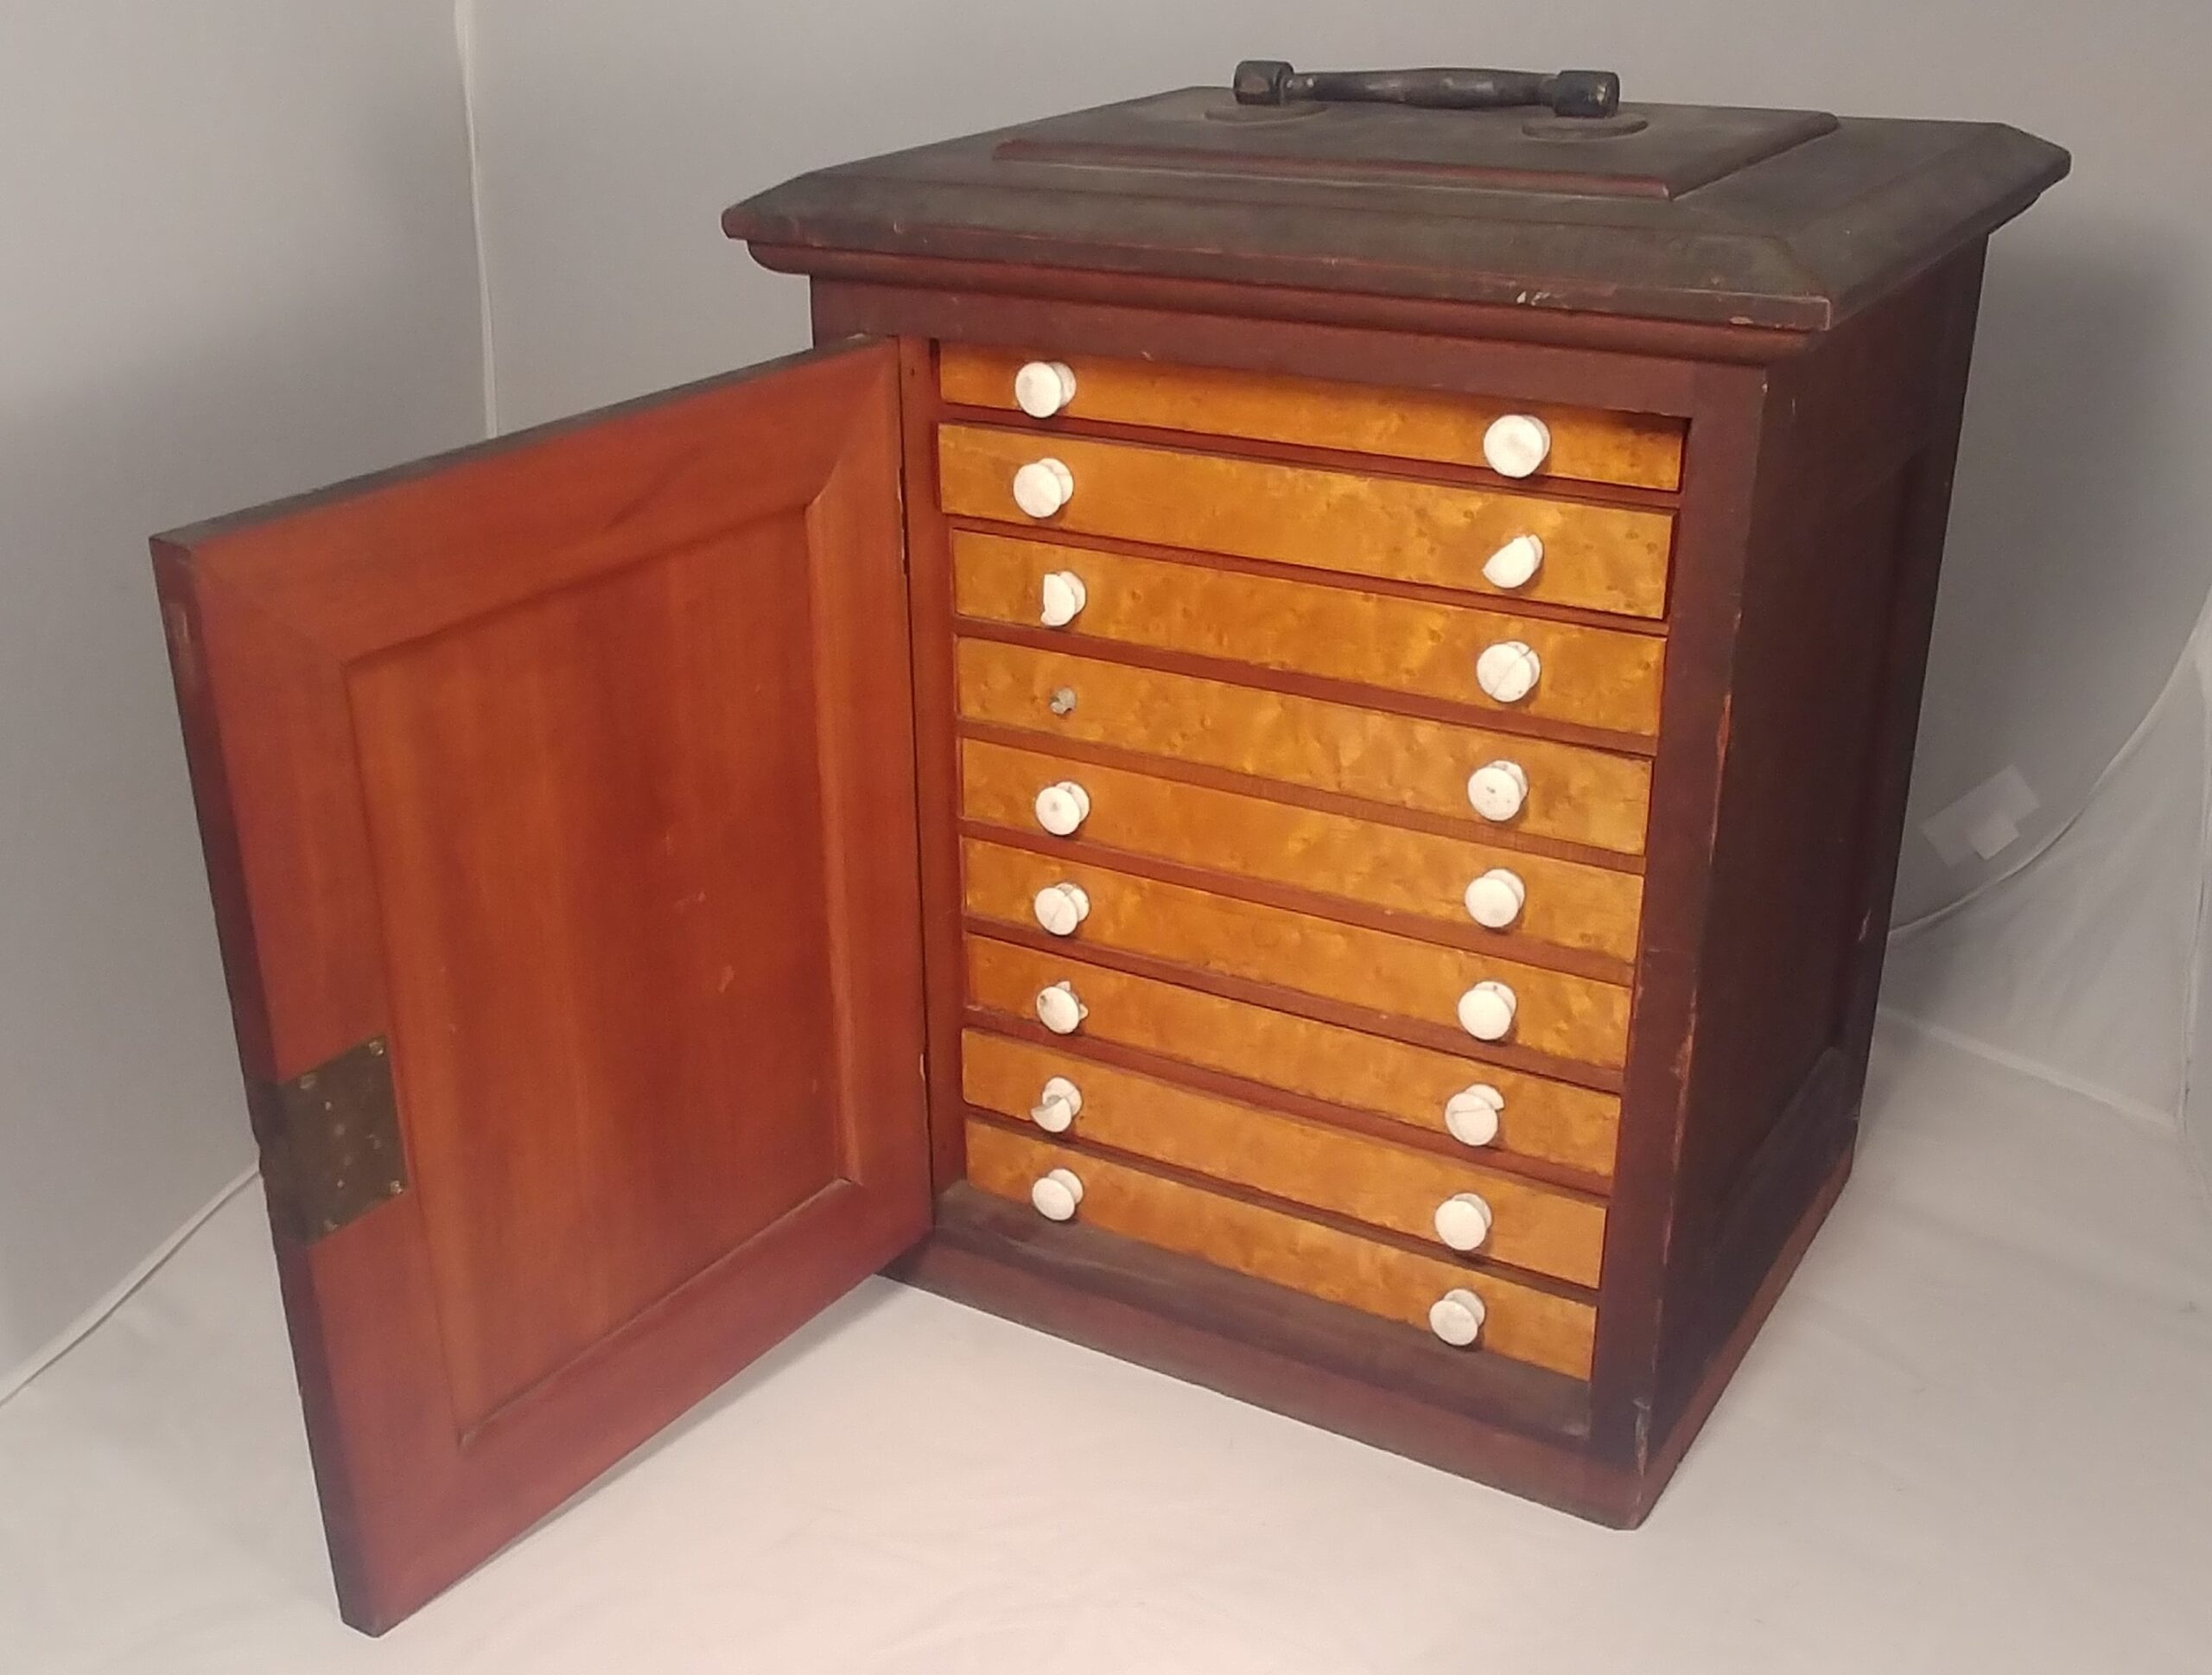 William Sullivant's microscope slide cabinet